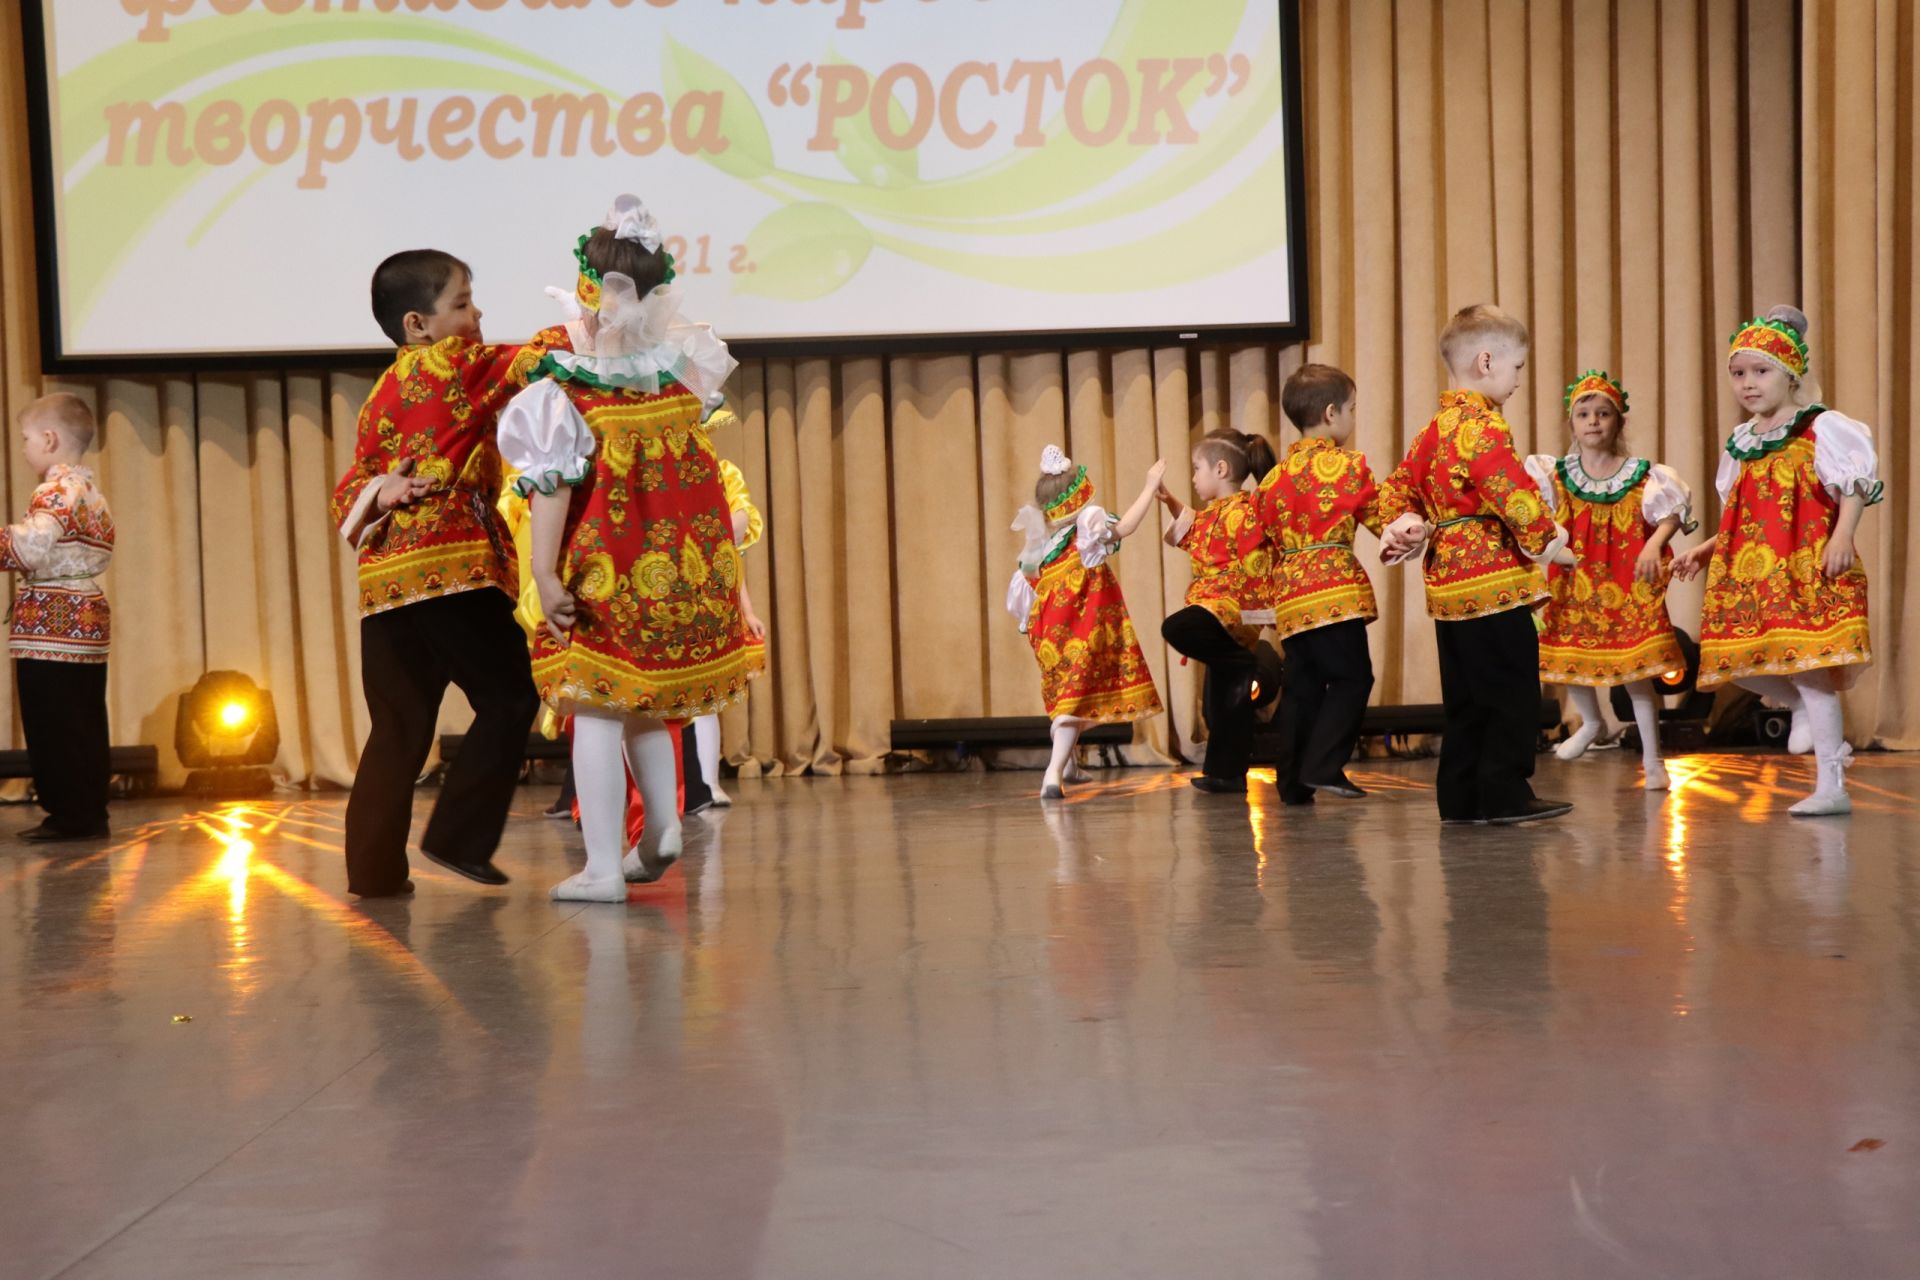 В Менделеевске состоялся гала-концерт детского фестиваля «Росток»